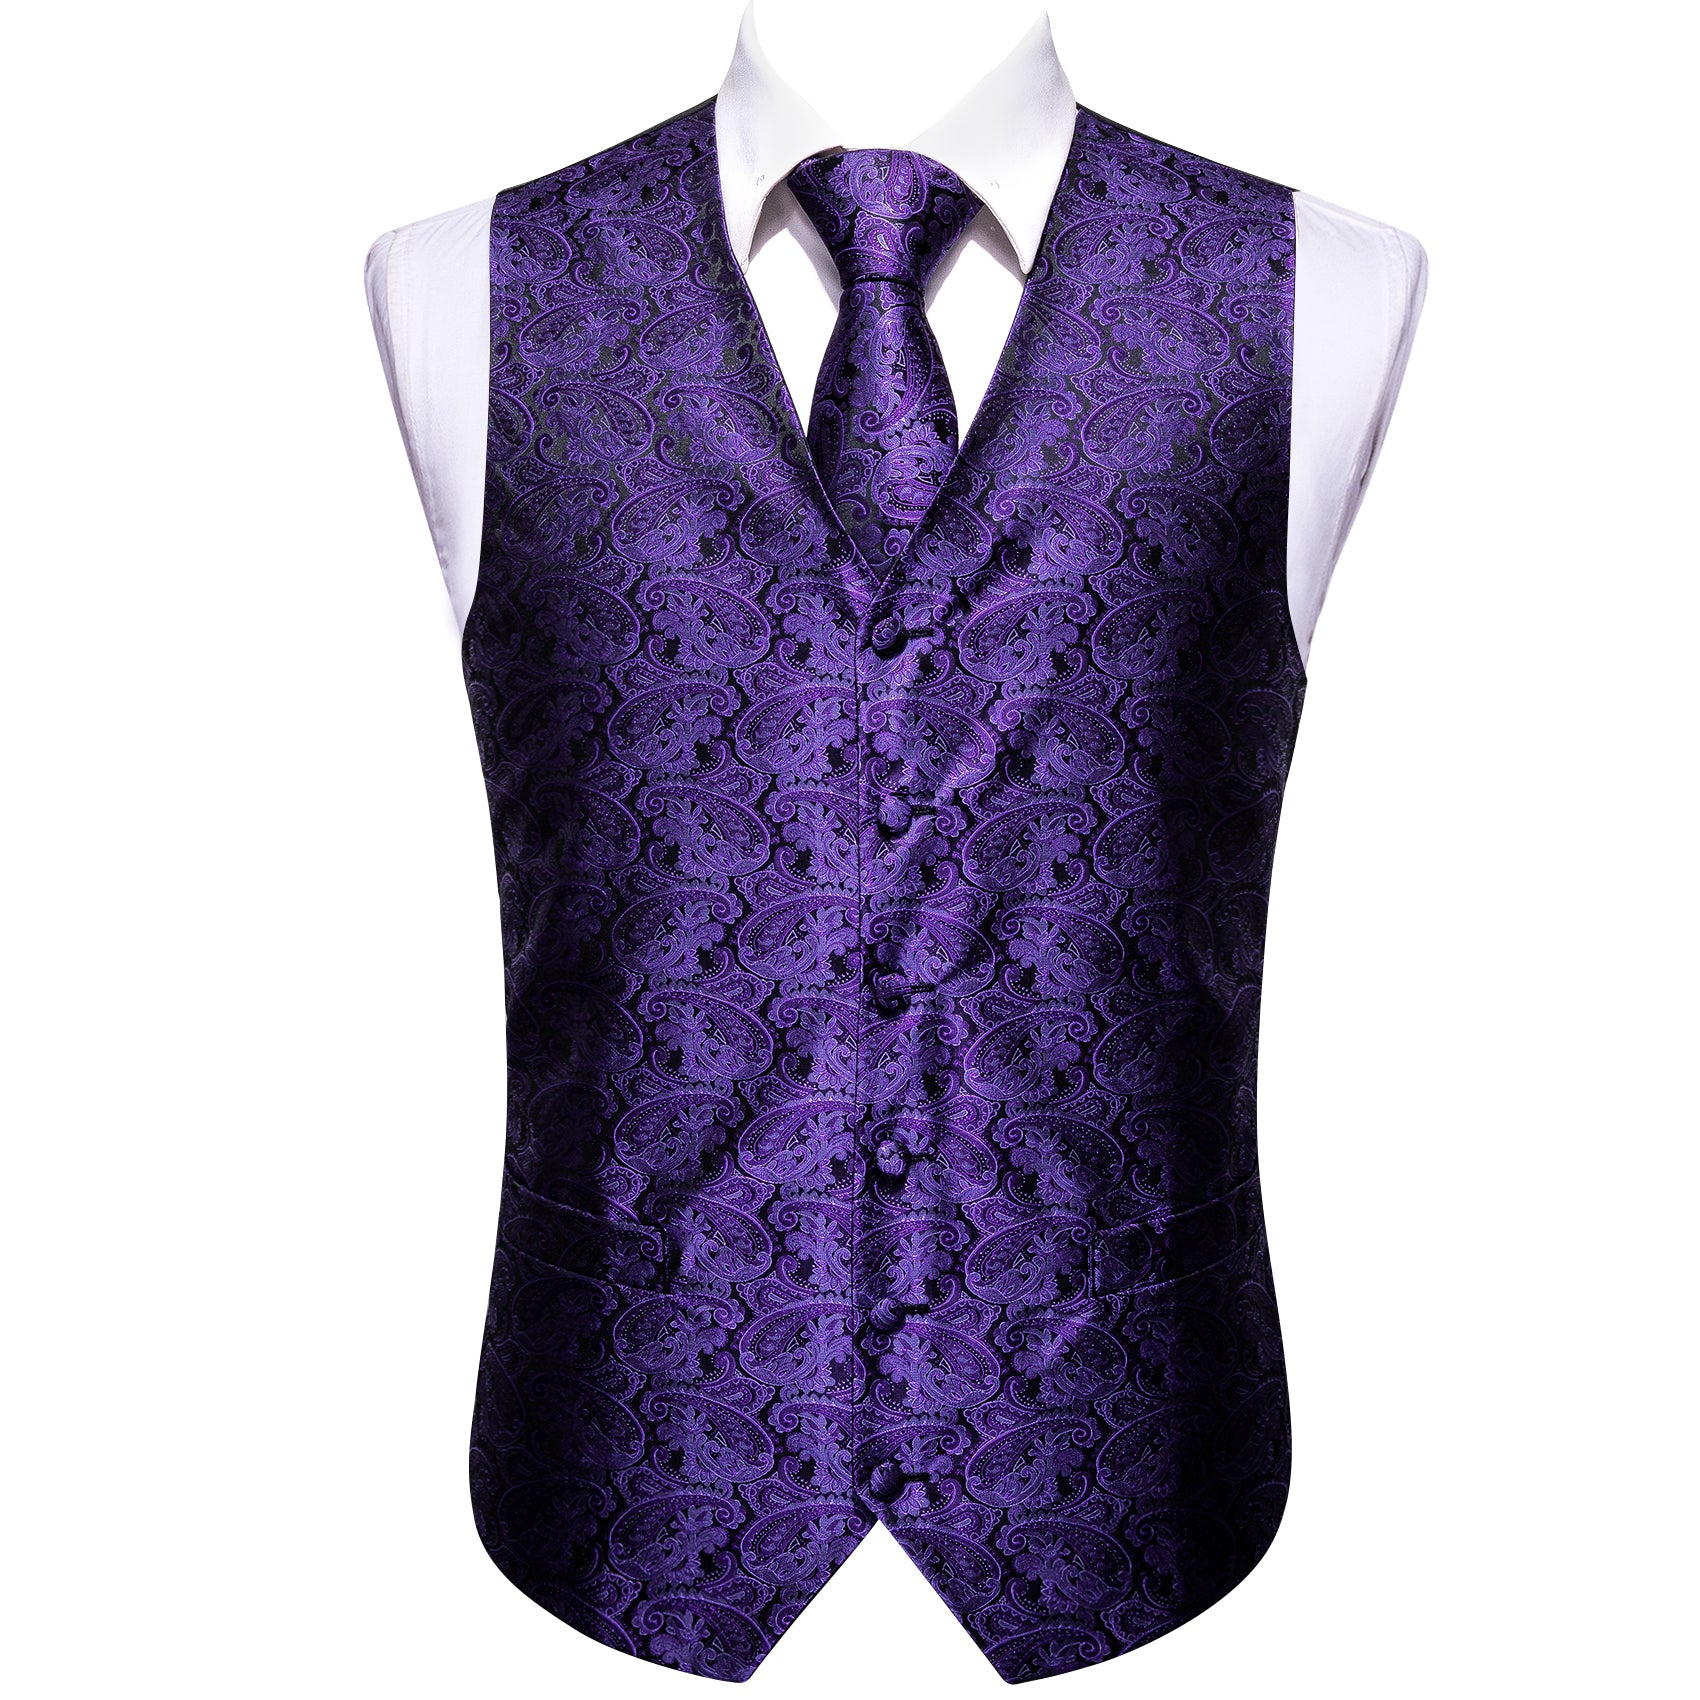 purple vest and tie